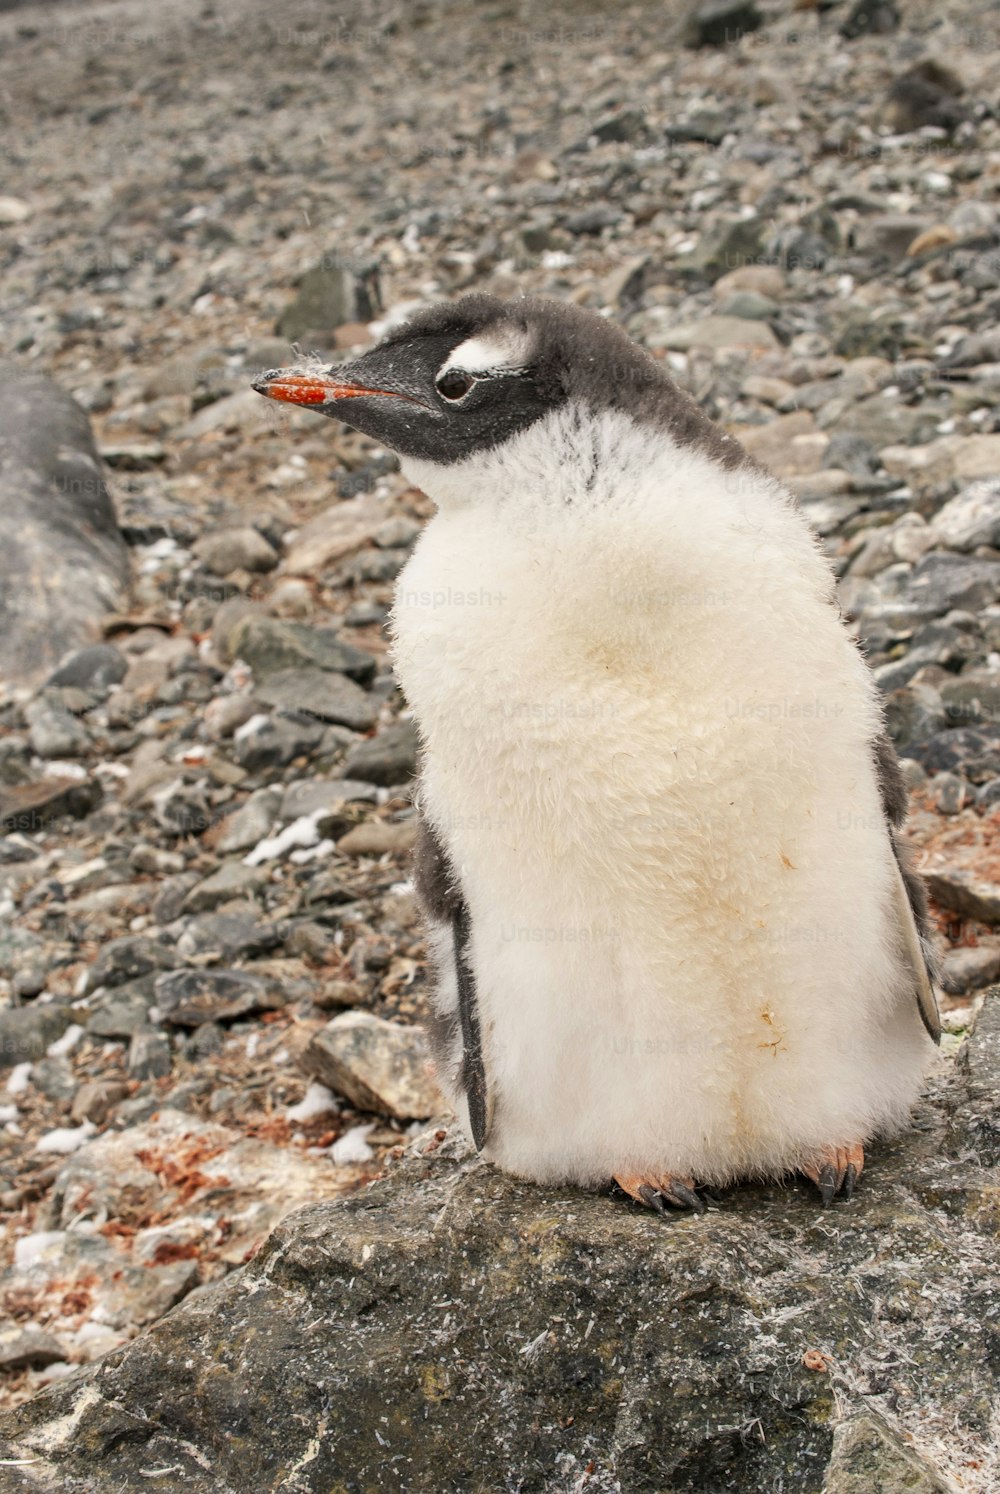 A Gentoo Penguin in Antarctica